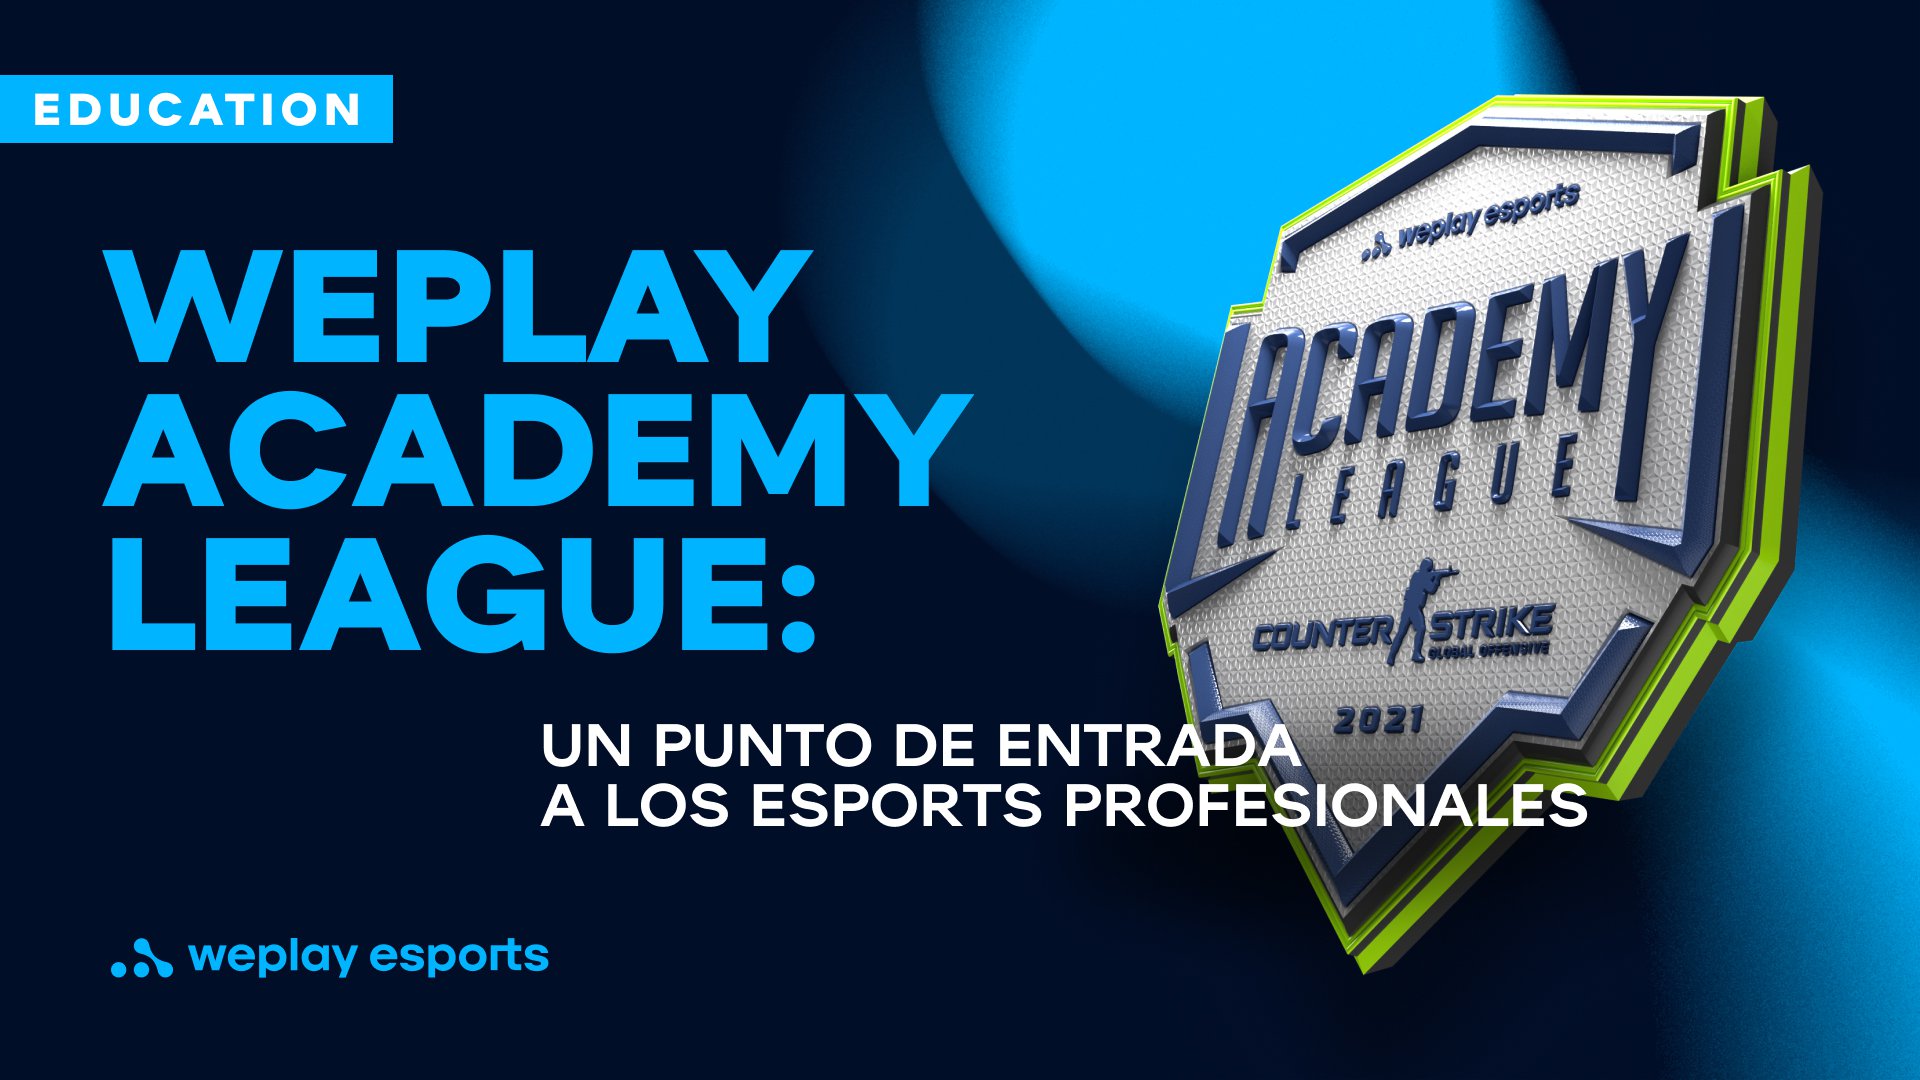 WePlay Academy League: un punto de entrada a los esports profesionales. Foto: WePlay Holding